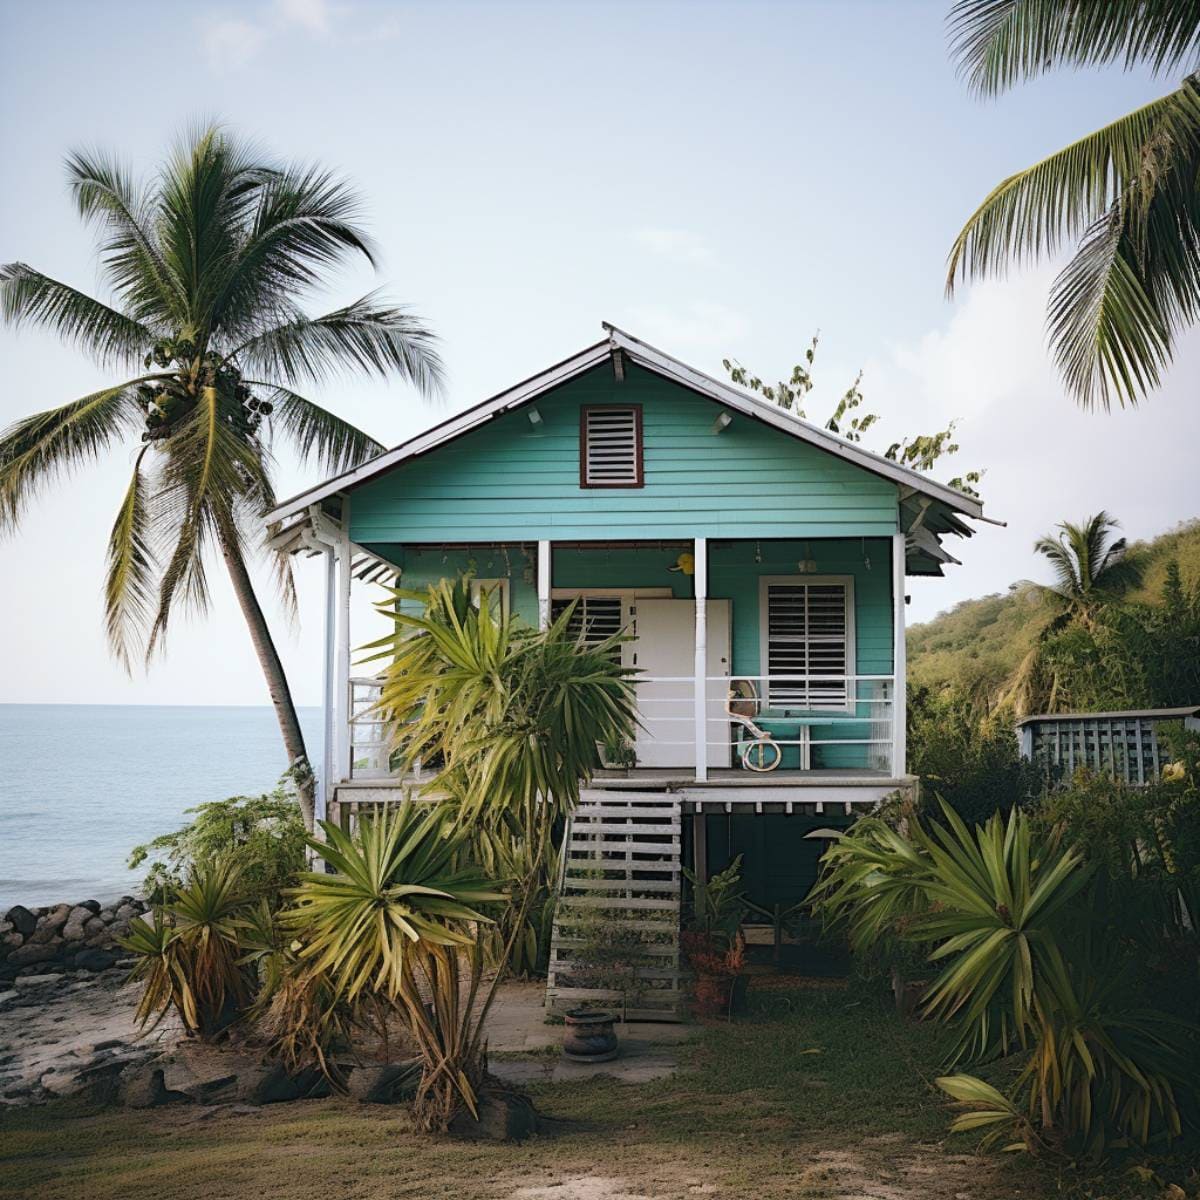 Keyliance Antilles - Résidence secondaire : comment s’y retrouver dans la fiscalité ?